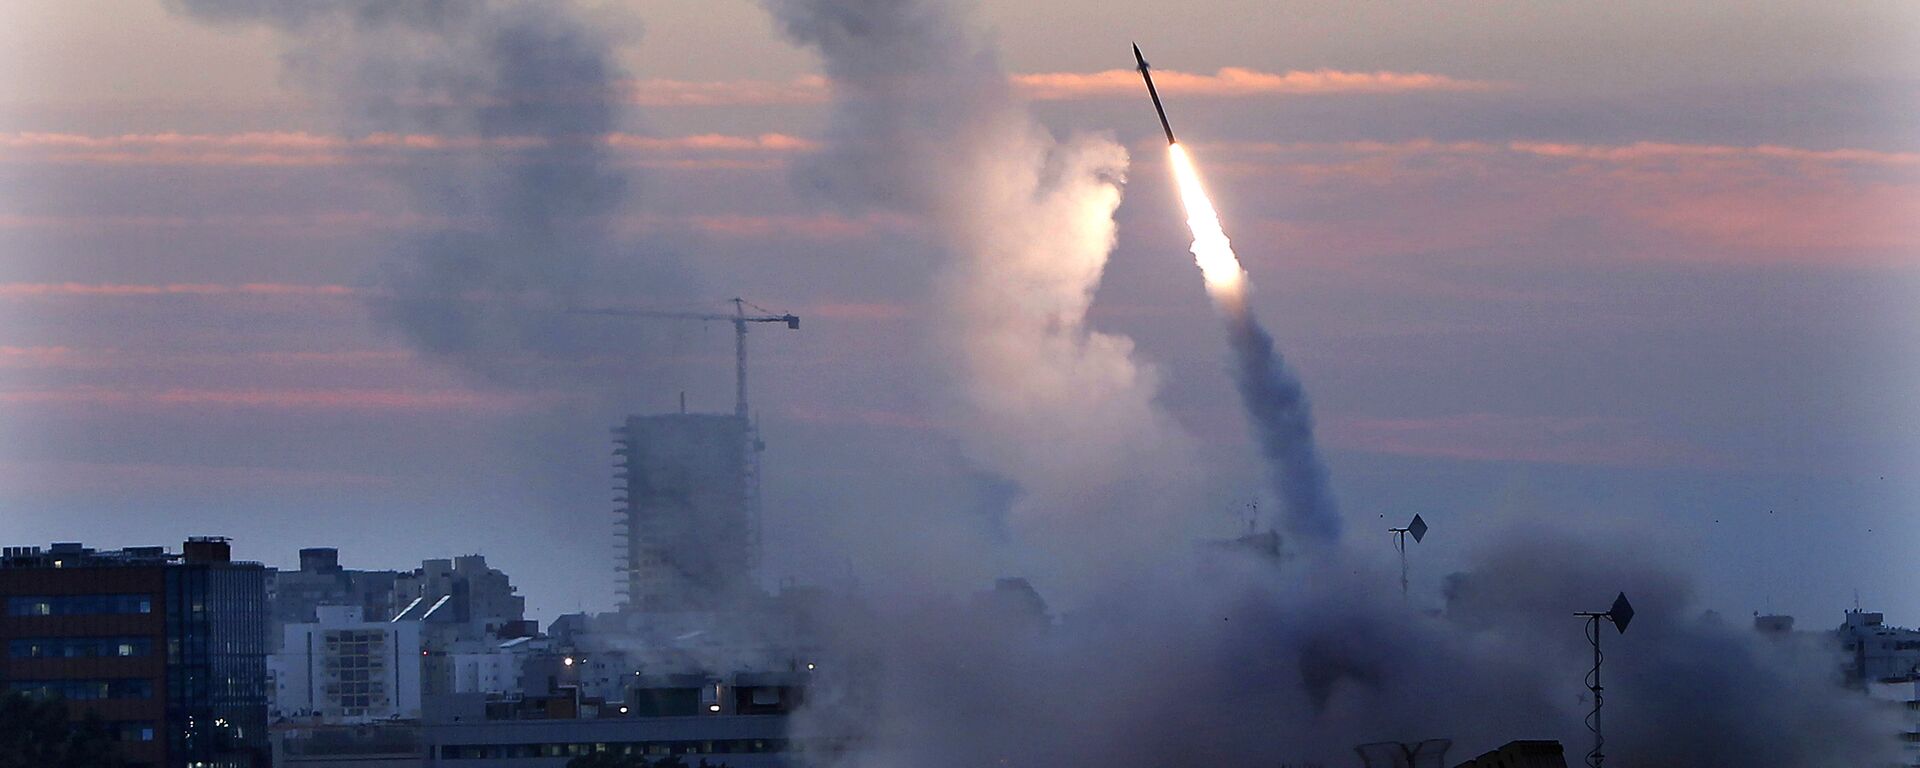 Sistema de defensa antiaérea de Israel intercepta un misil lanzado desde Gaza (archivo) - Sputnik Mundo, 1920, 09.04.2022